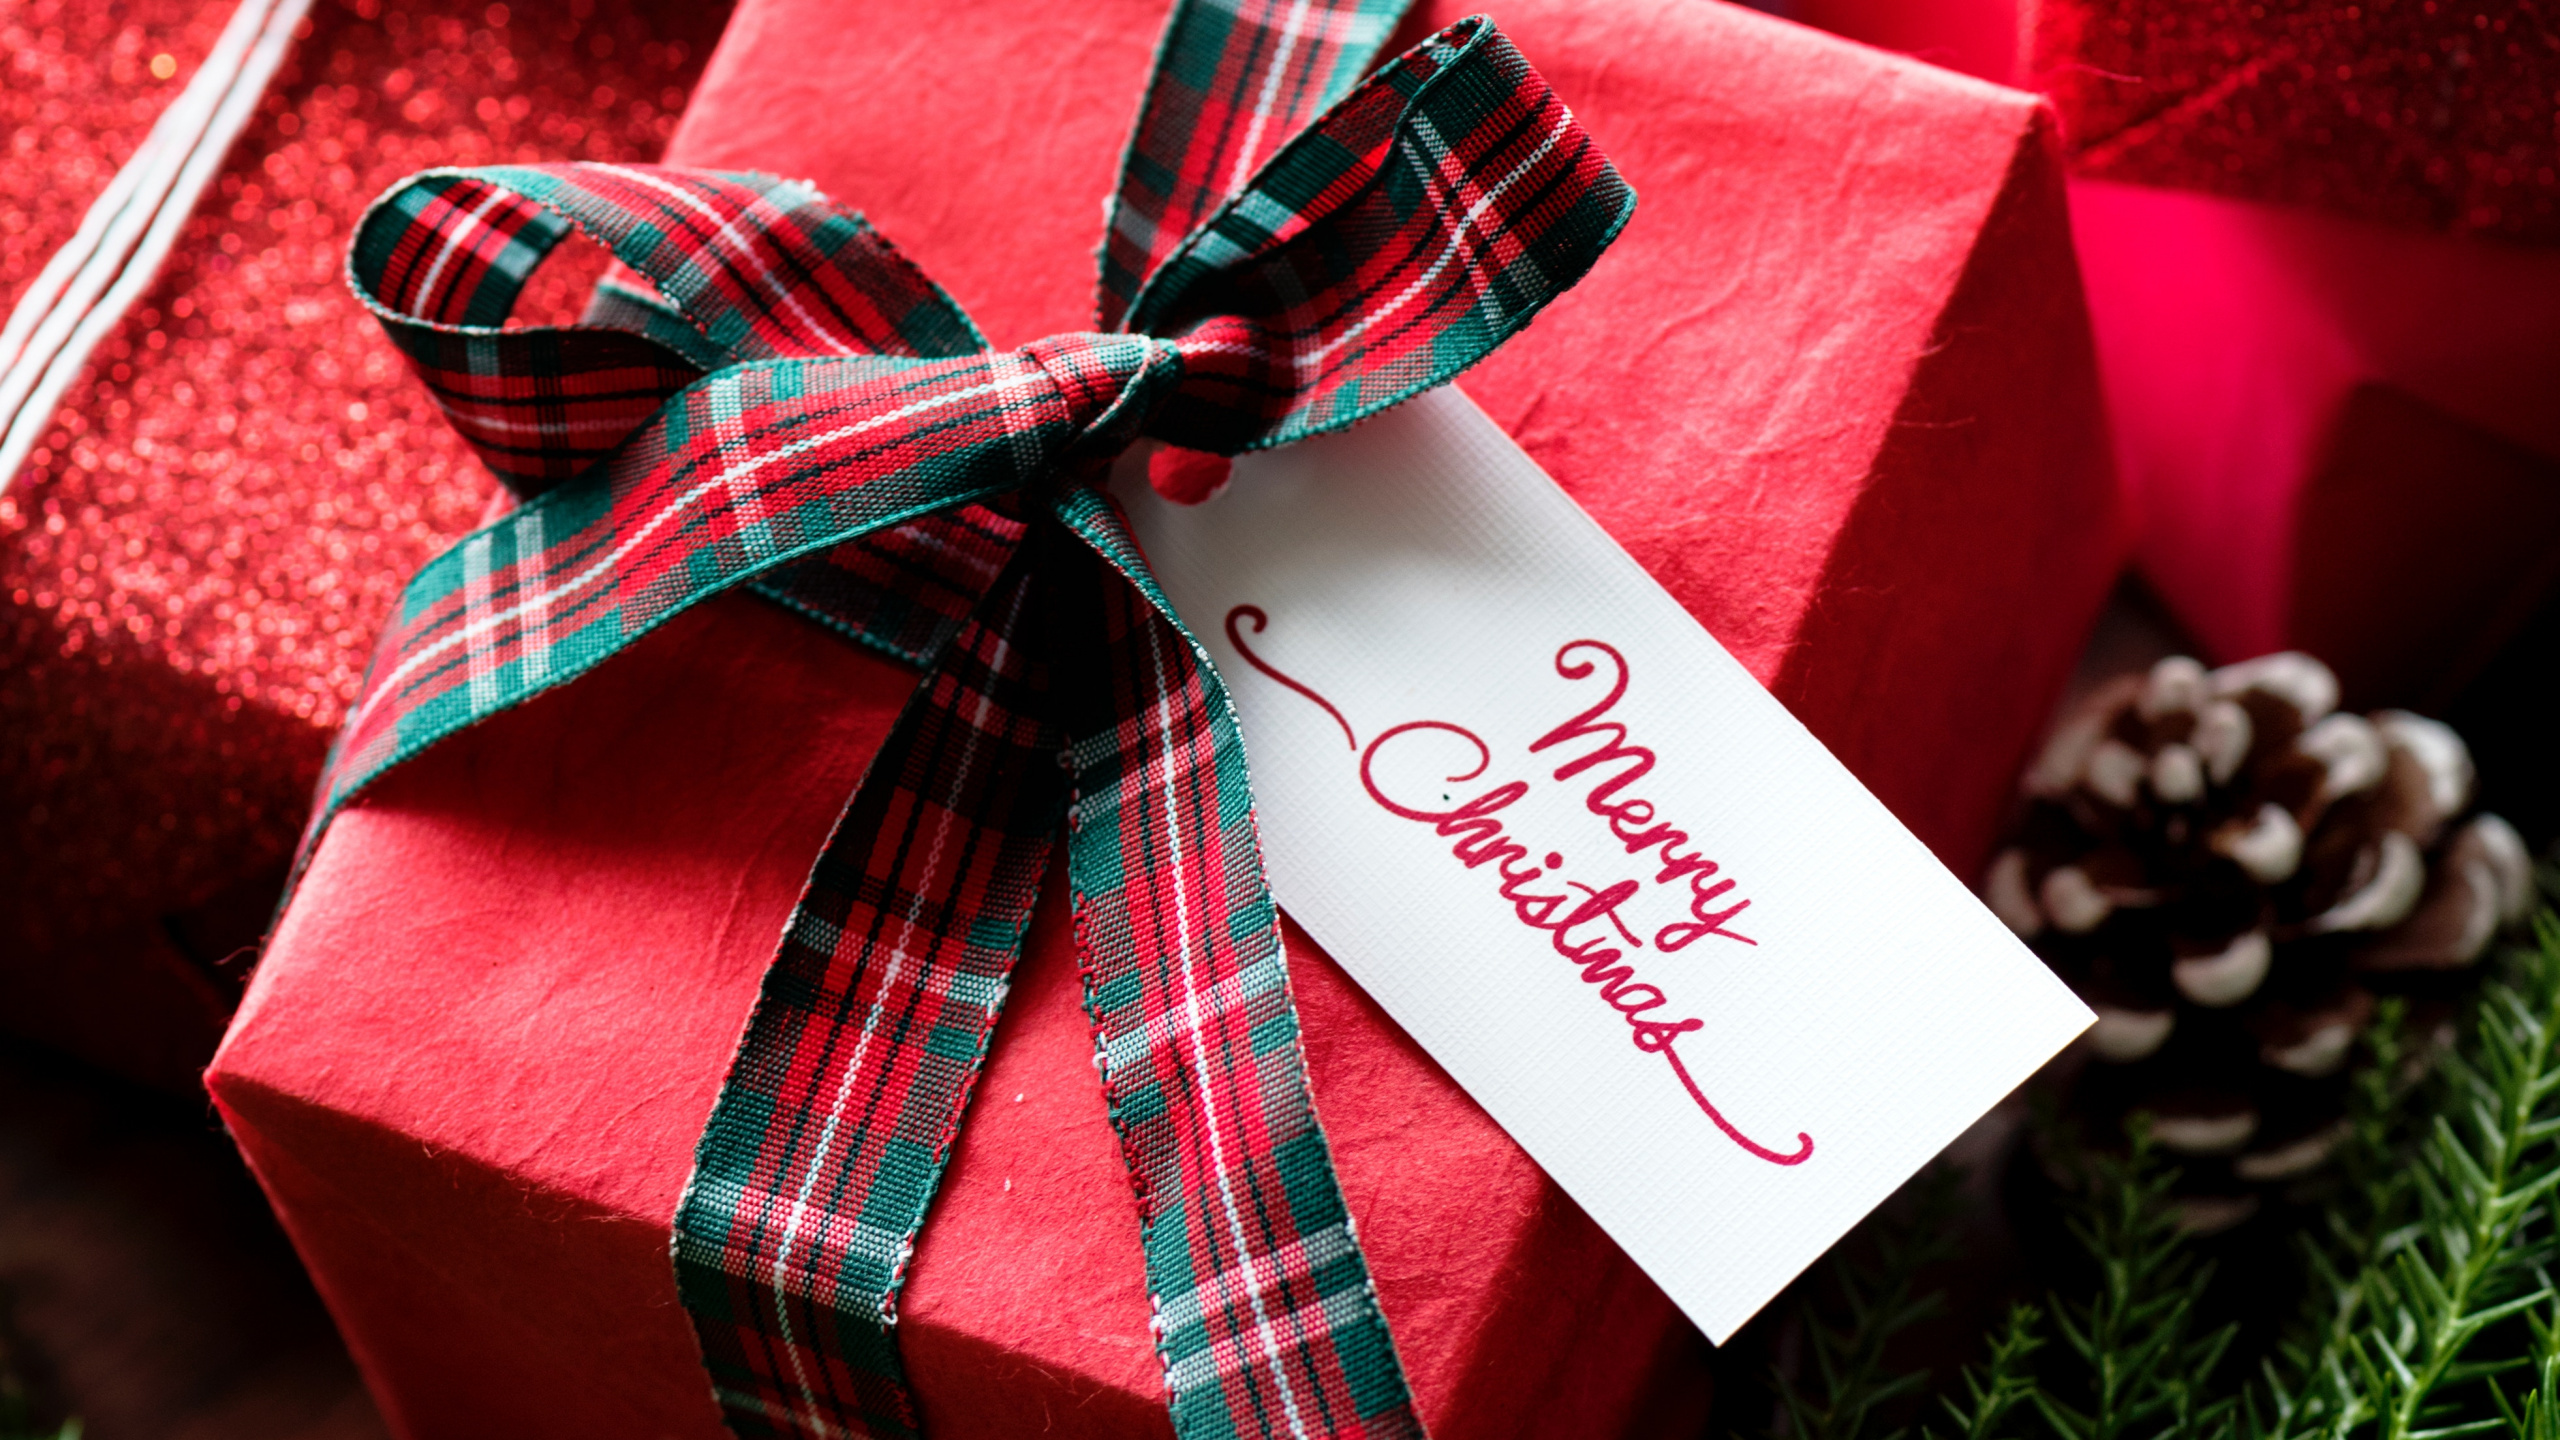 礼物, 圣诞节礼物, 礼品包装, 圣诞节那天, 丝带 壁纸 2560x1440 允许